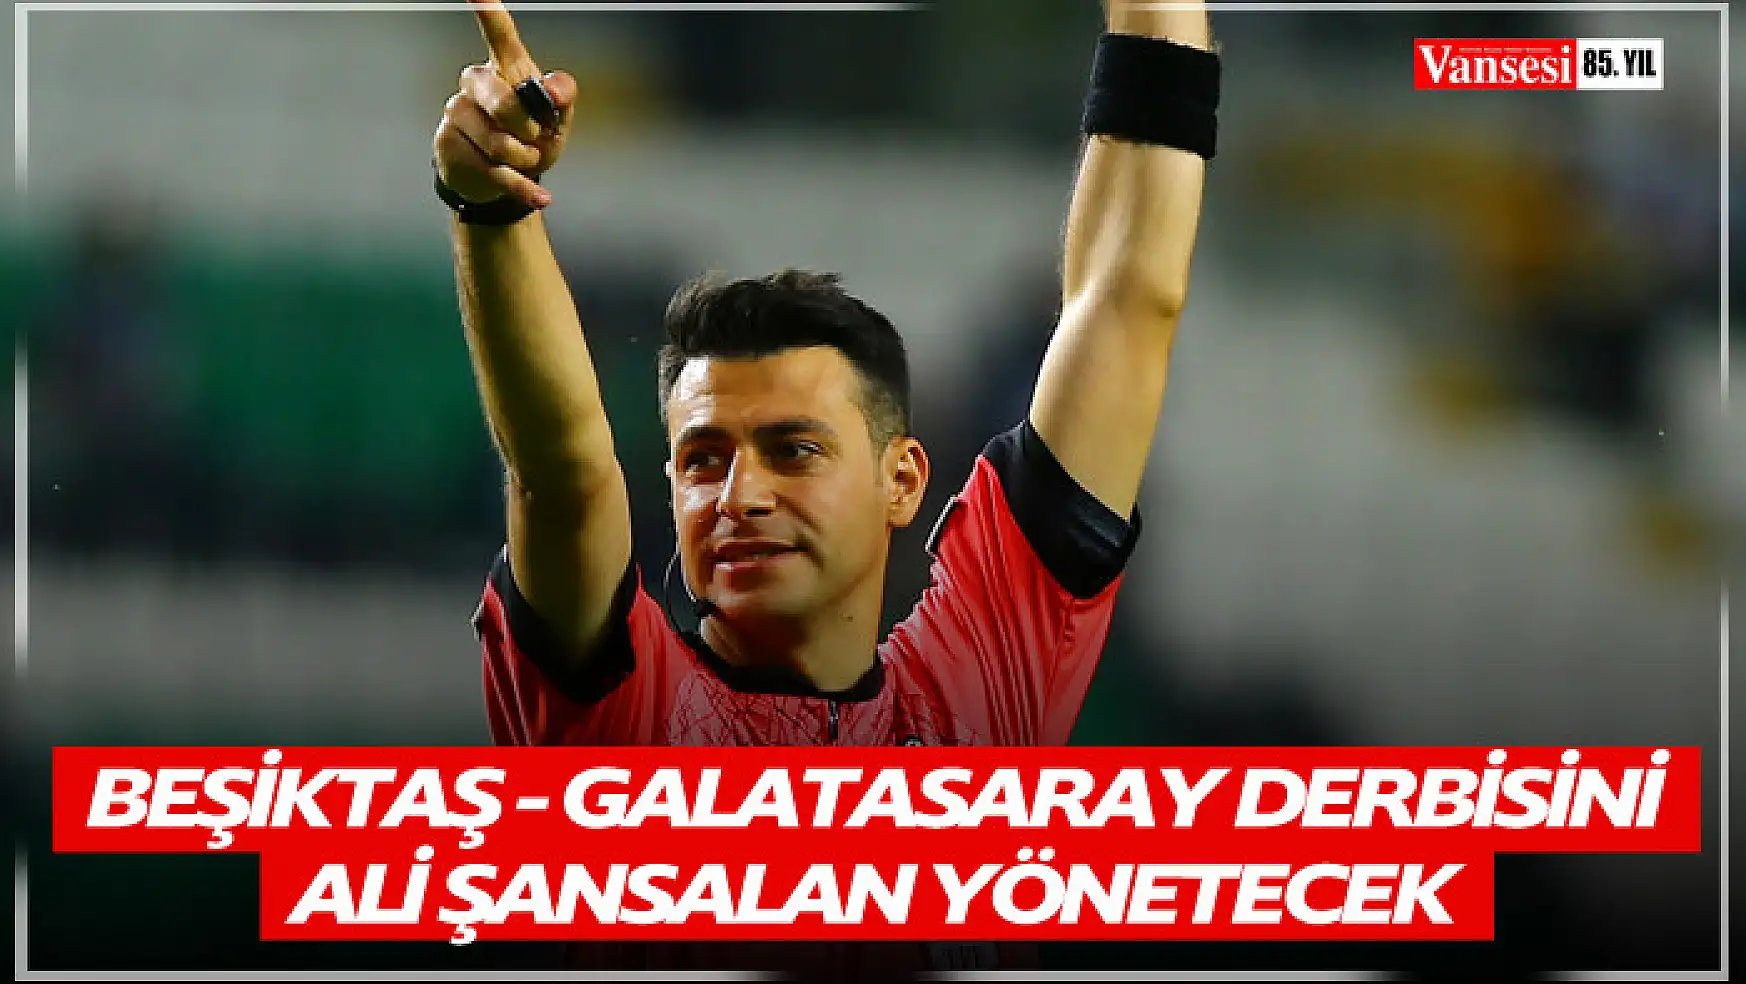 Beşiktaş - Galatasaray derbisini Ali Şansalan yönetecek